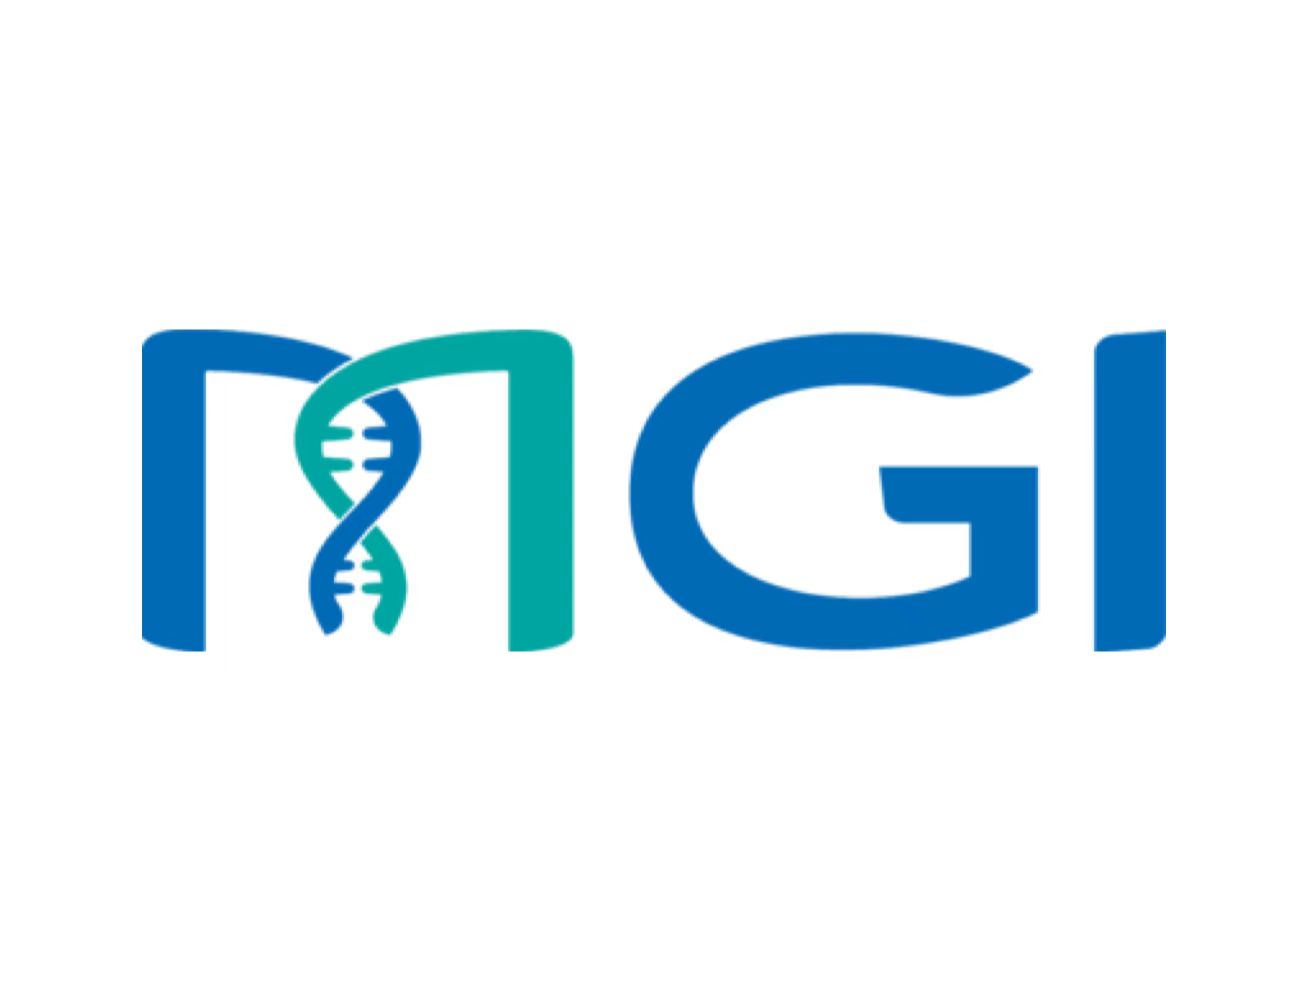 MGI Tech Gets CE Mark for DNBSeq-G99 Sequencer Under New EU IVDR Framework